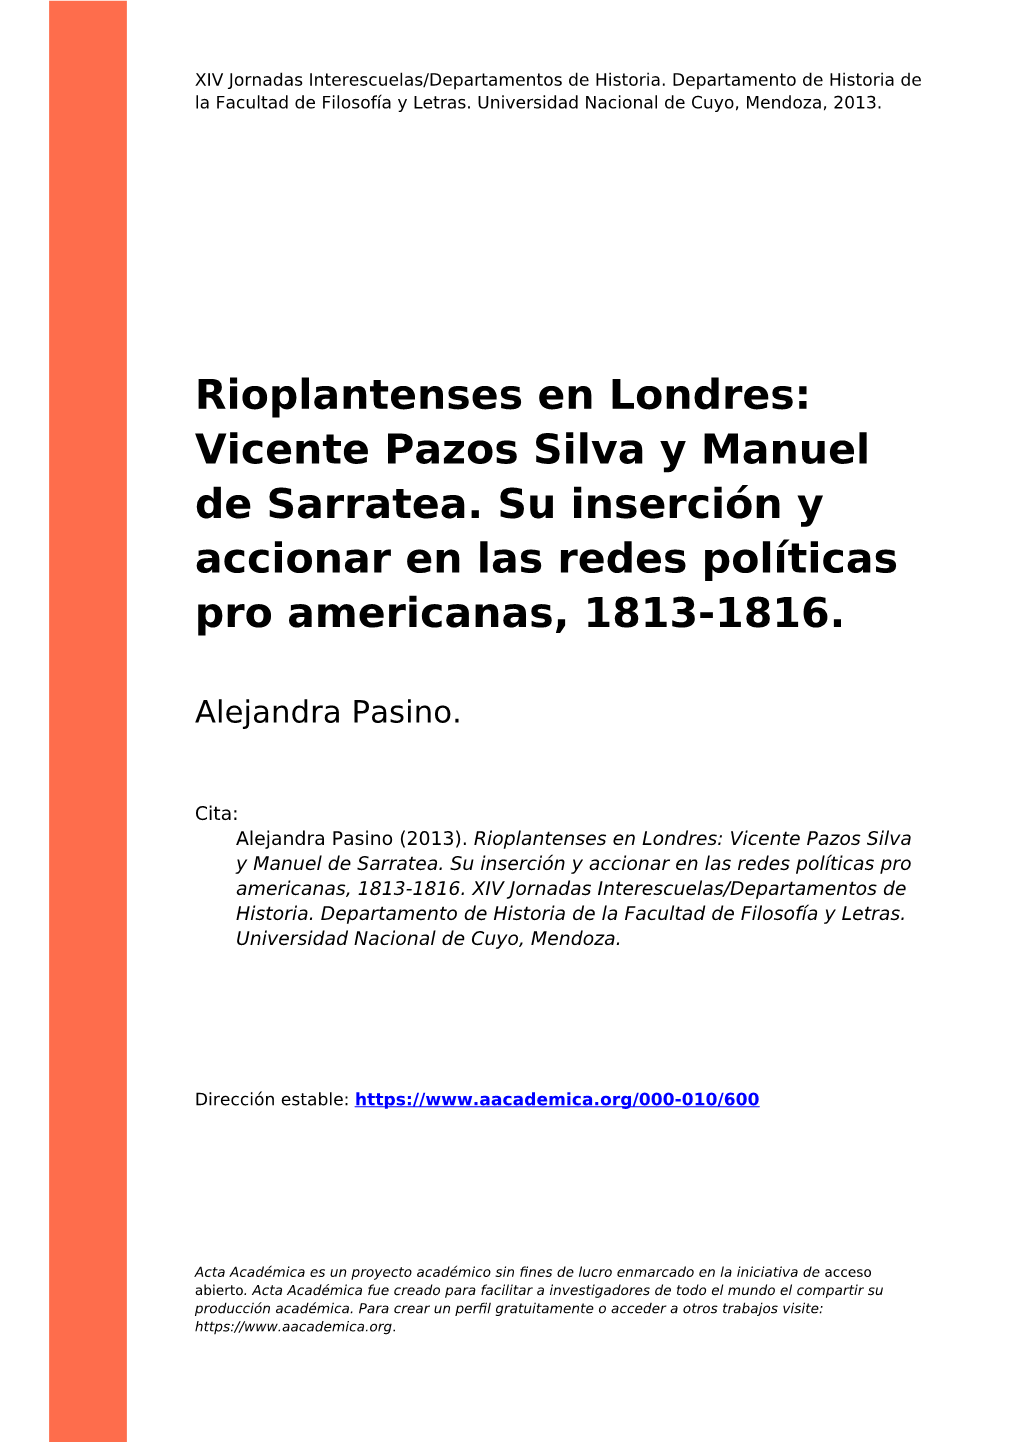 Rioplantenses En Londres: Vicente Pazos Silva Y Manuel De Sarratea